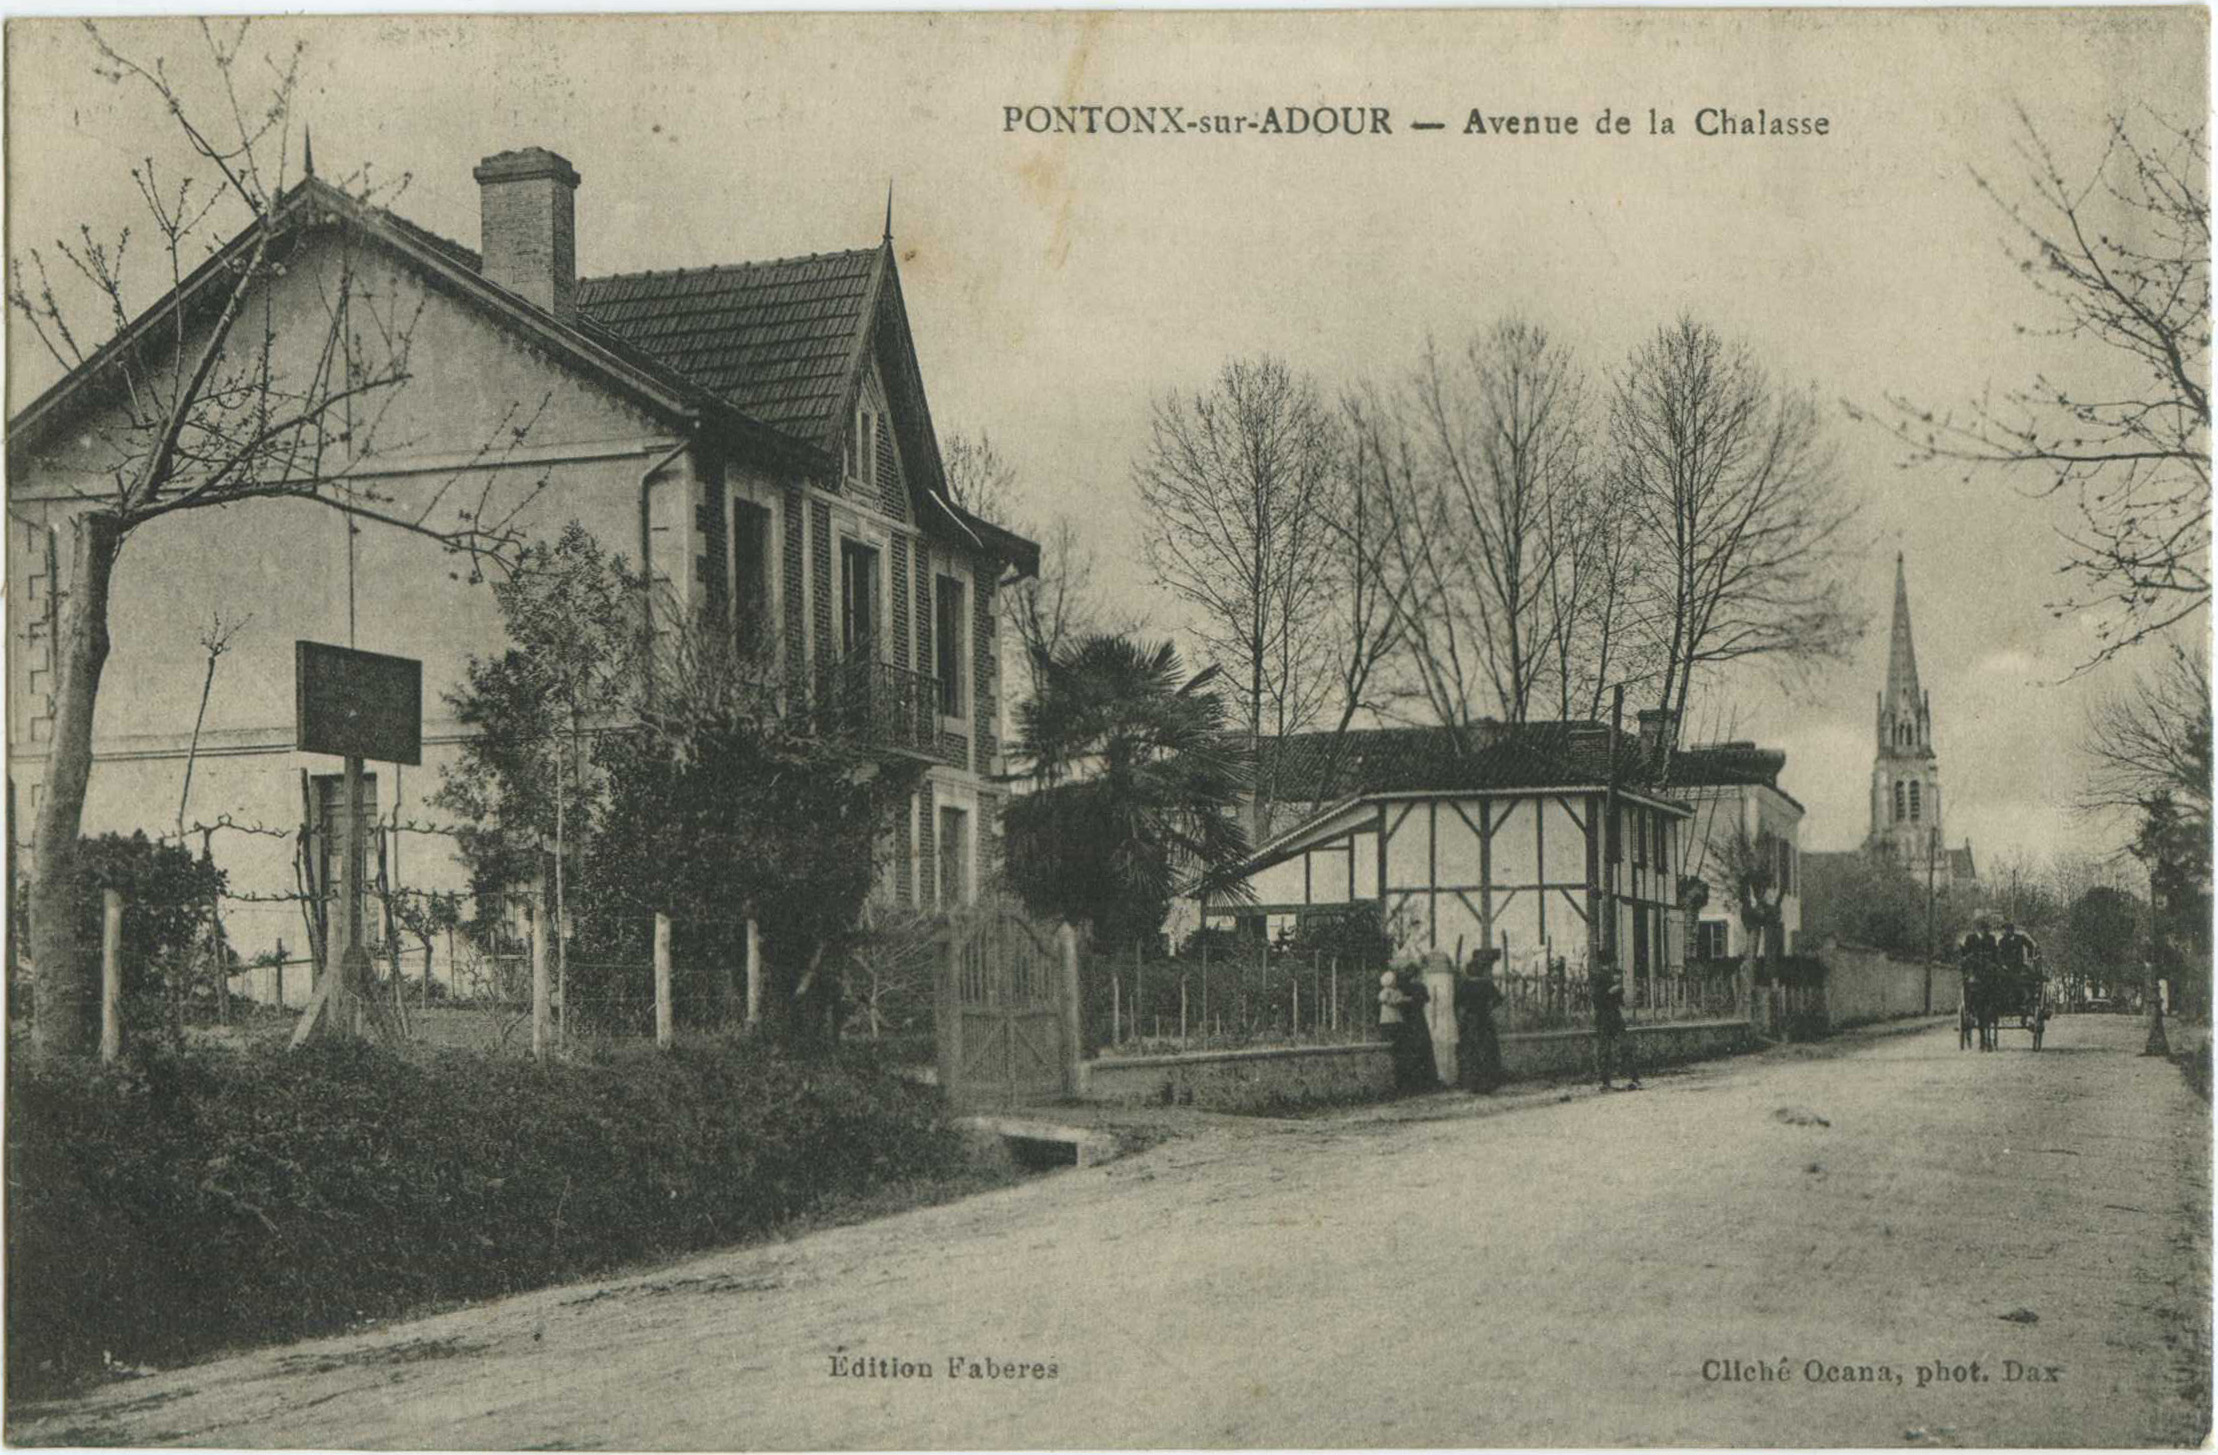 Pontonx-sur-l'Adour - Avenue de la Chalasse